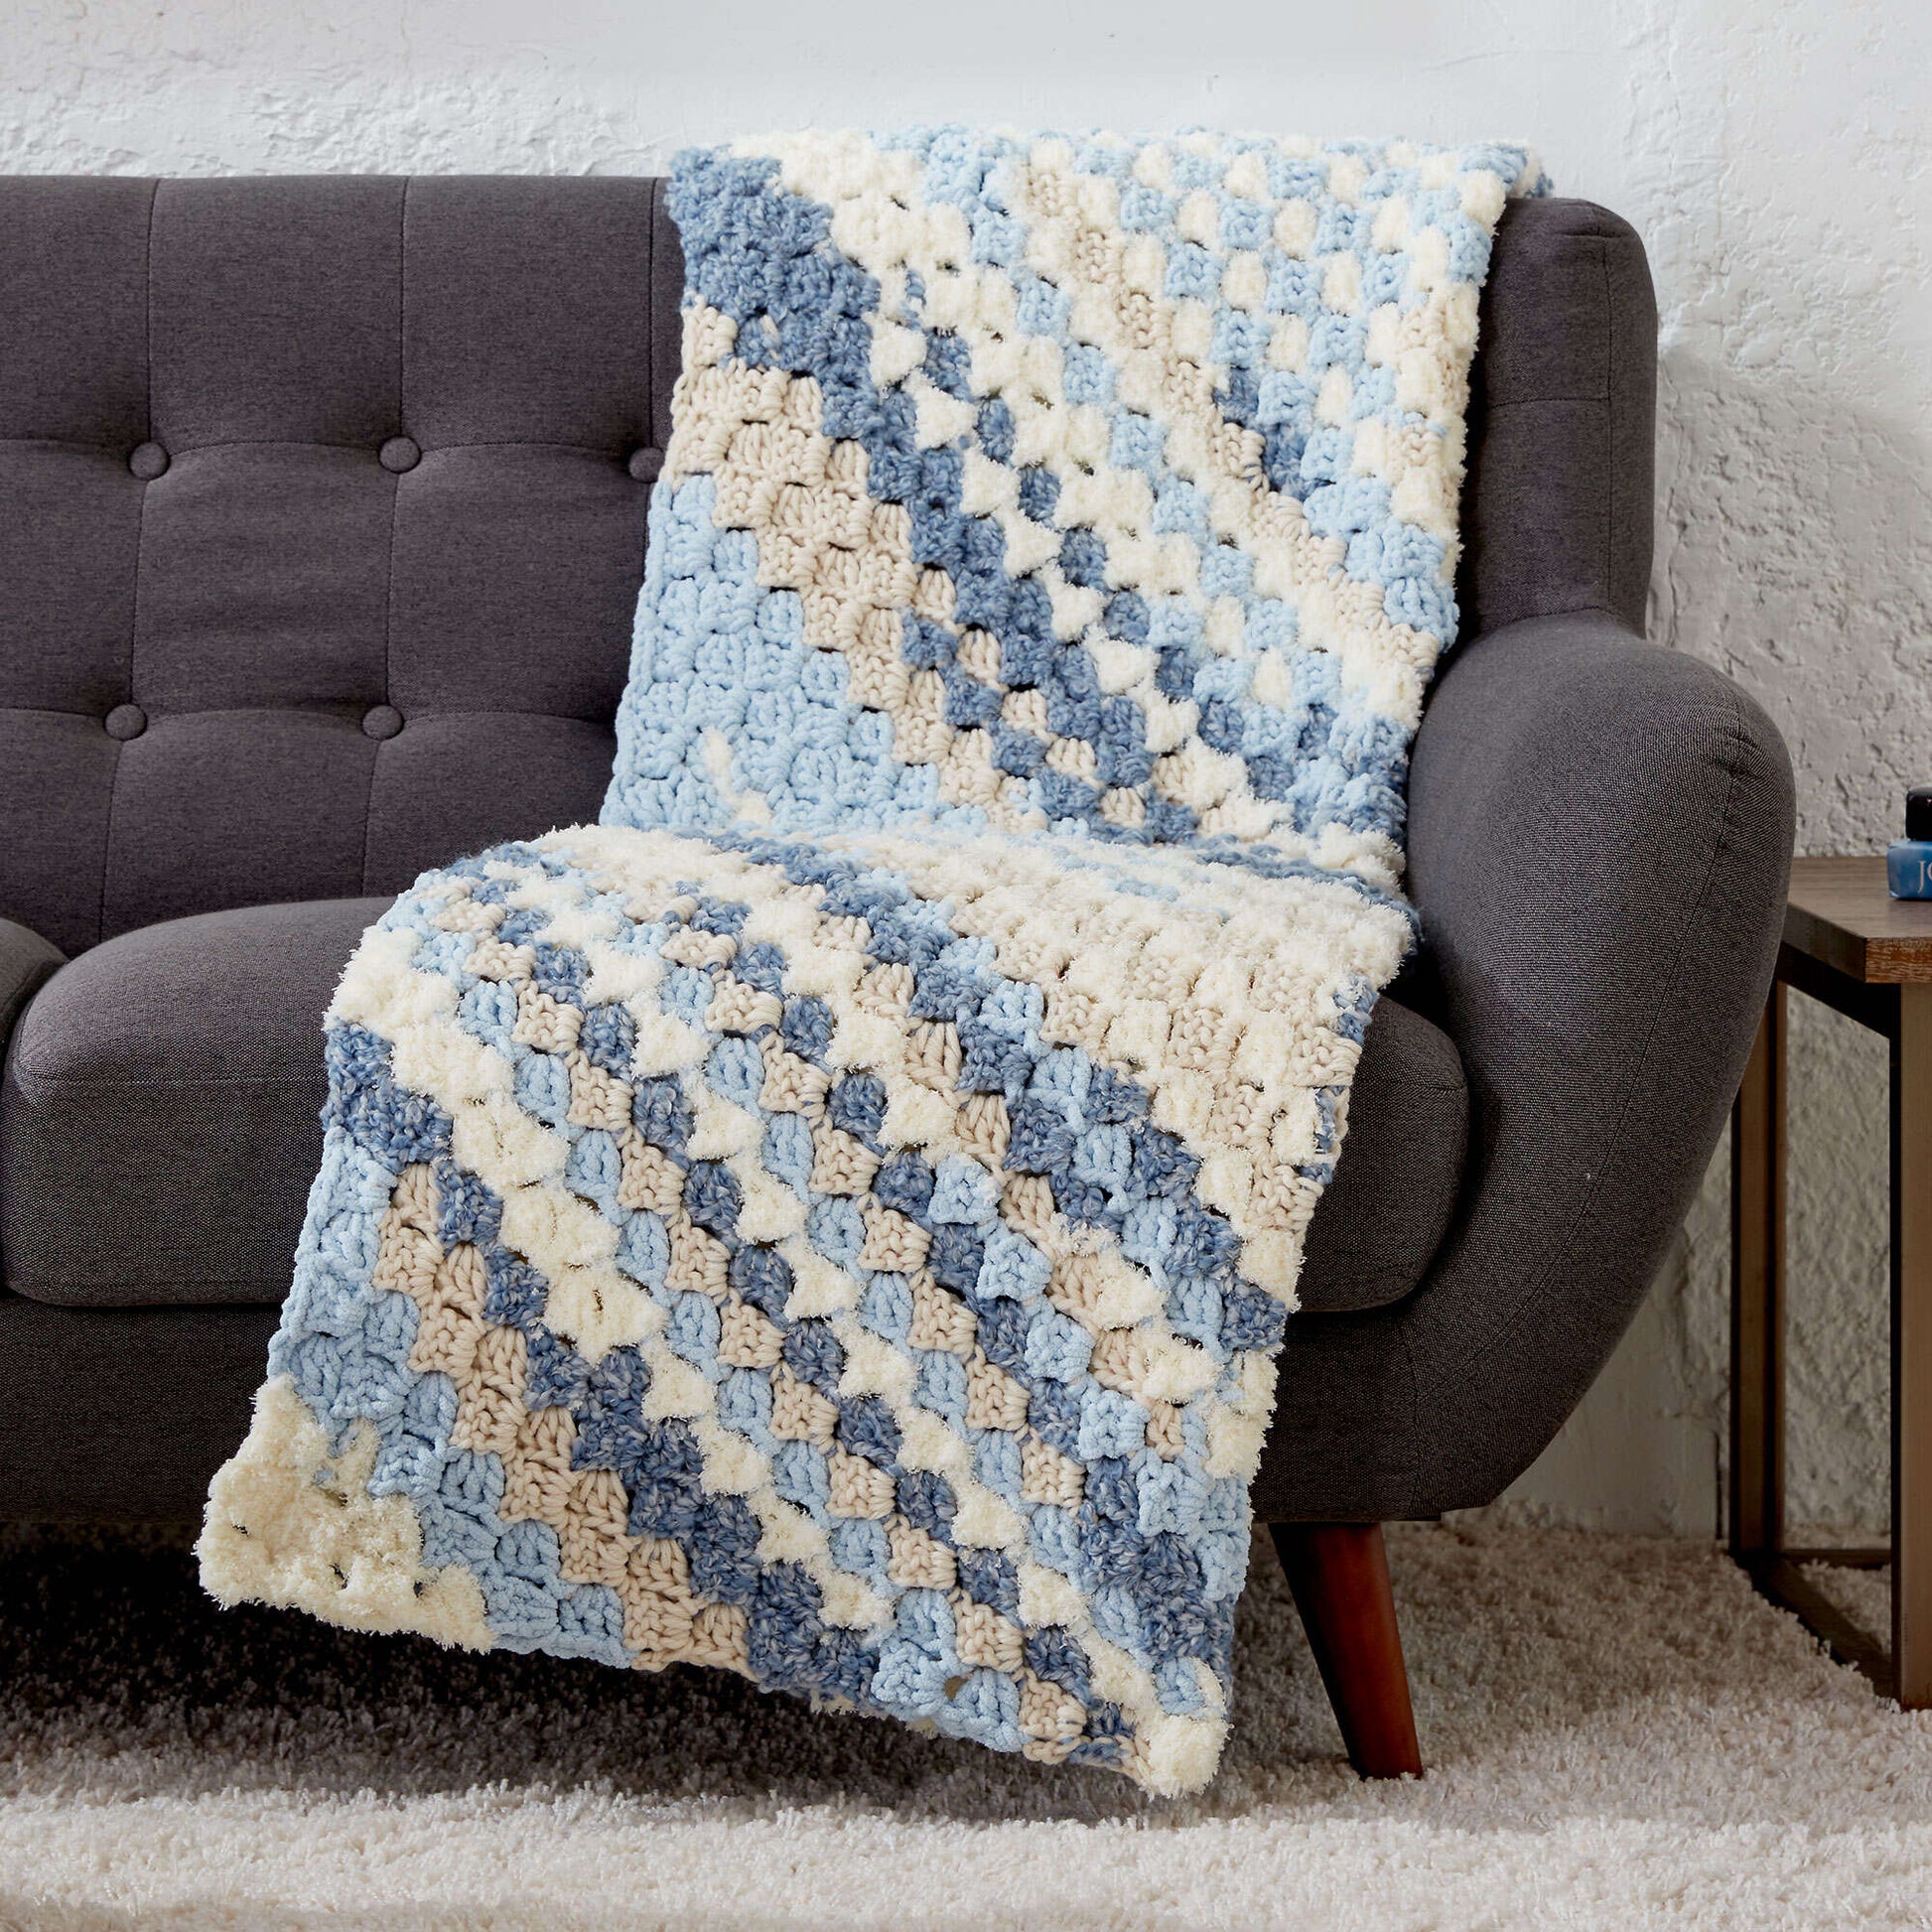 Free Bernat Block Party Crochet Blanket Pattern